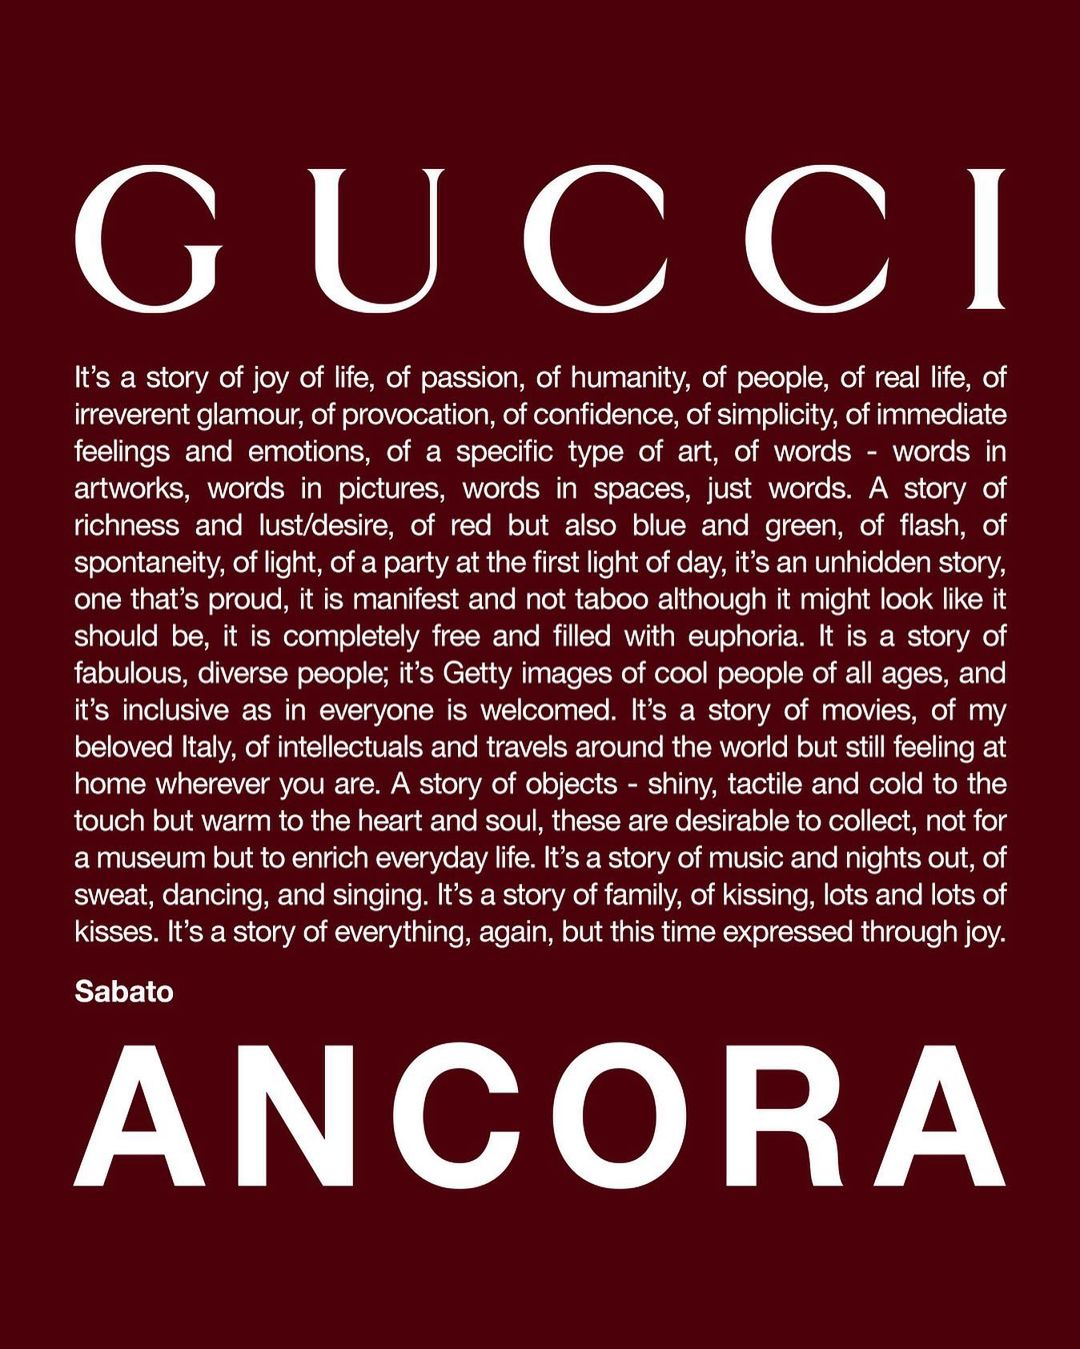 Ο Gucci βρίσκει ξανά την παλιά του αίγλη με τον Sabato De Sarno να σέβεται την κληρονομιά του οίκου